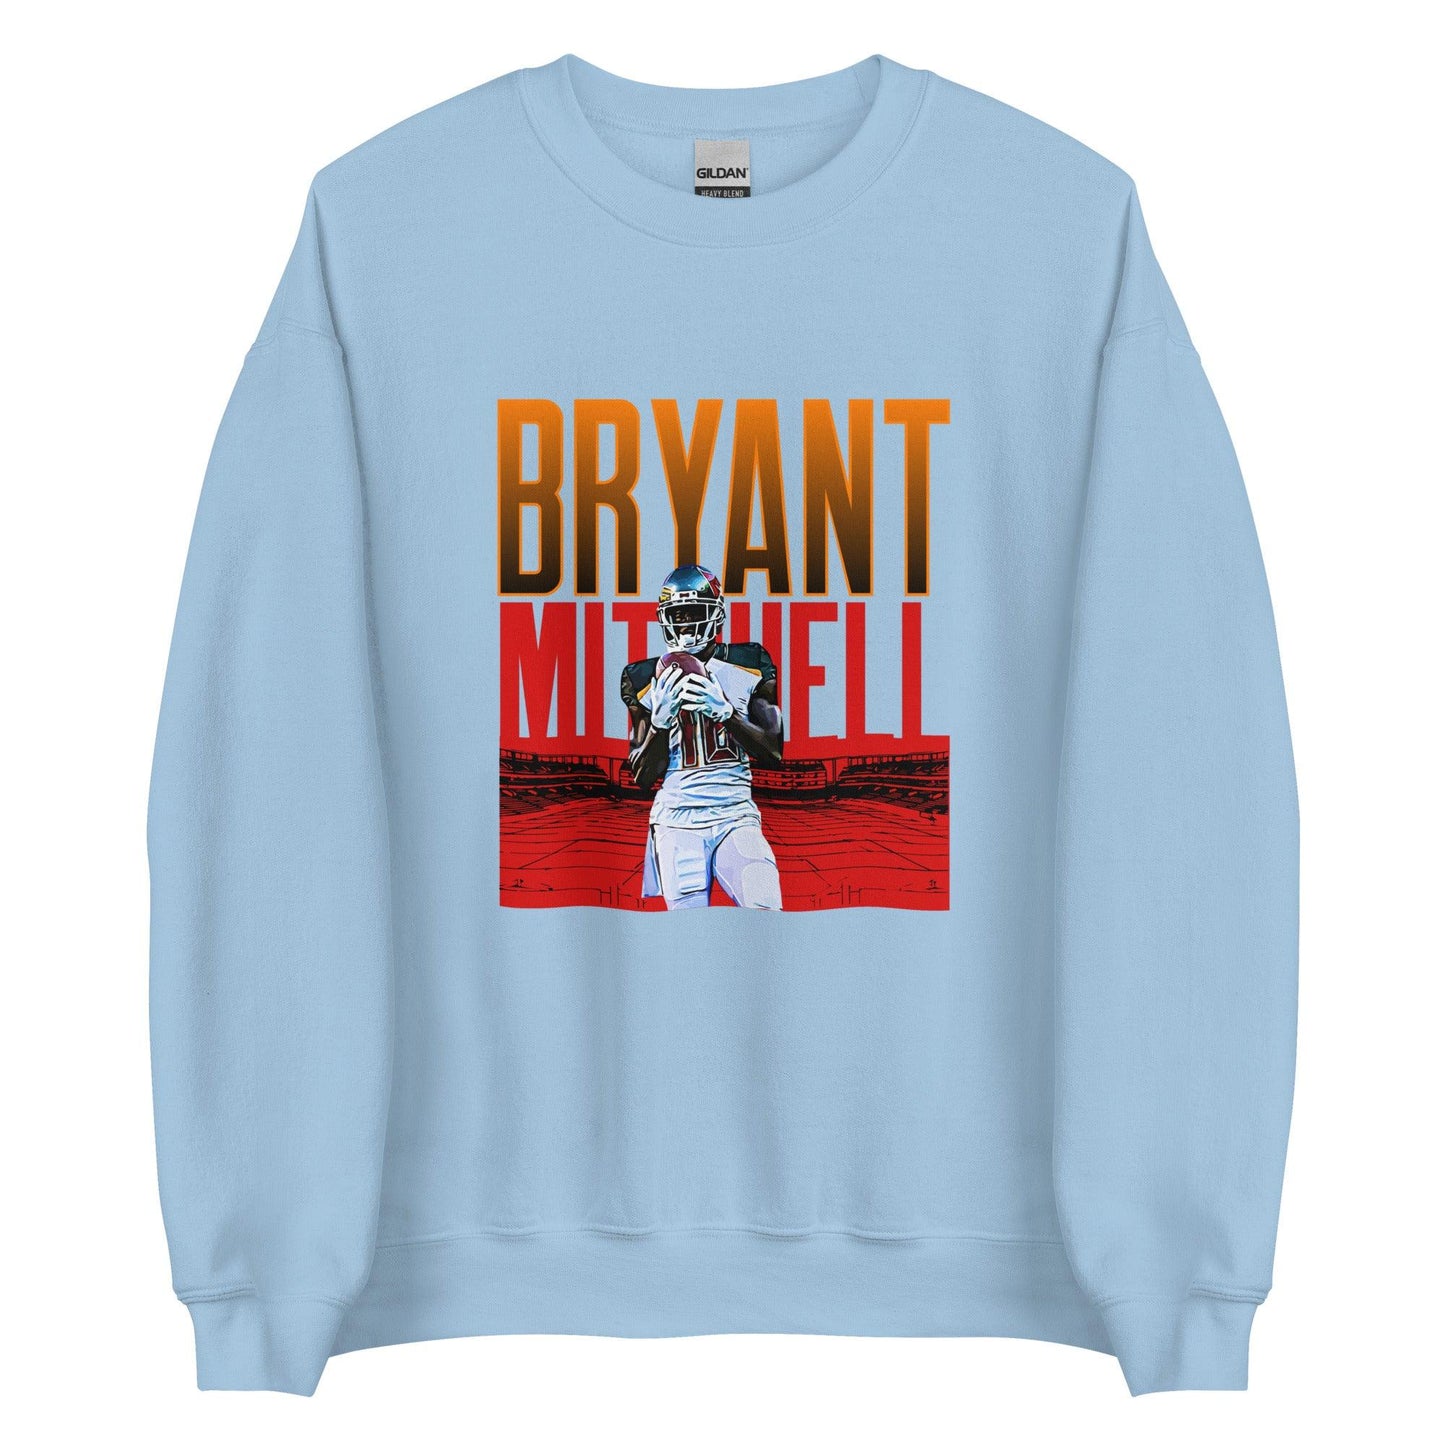 Bryant Mitchell "Gameday" Sweatshirt - Fan Arch